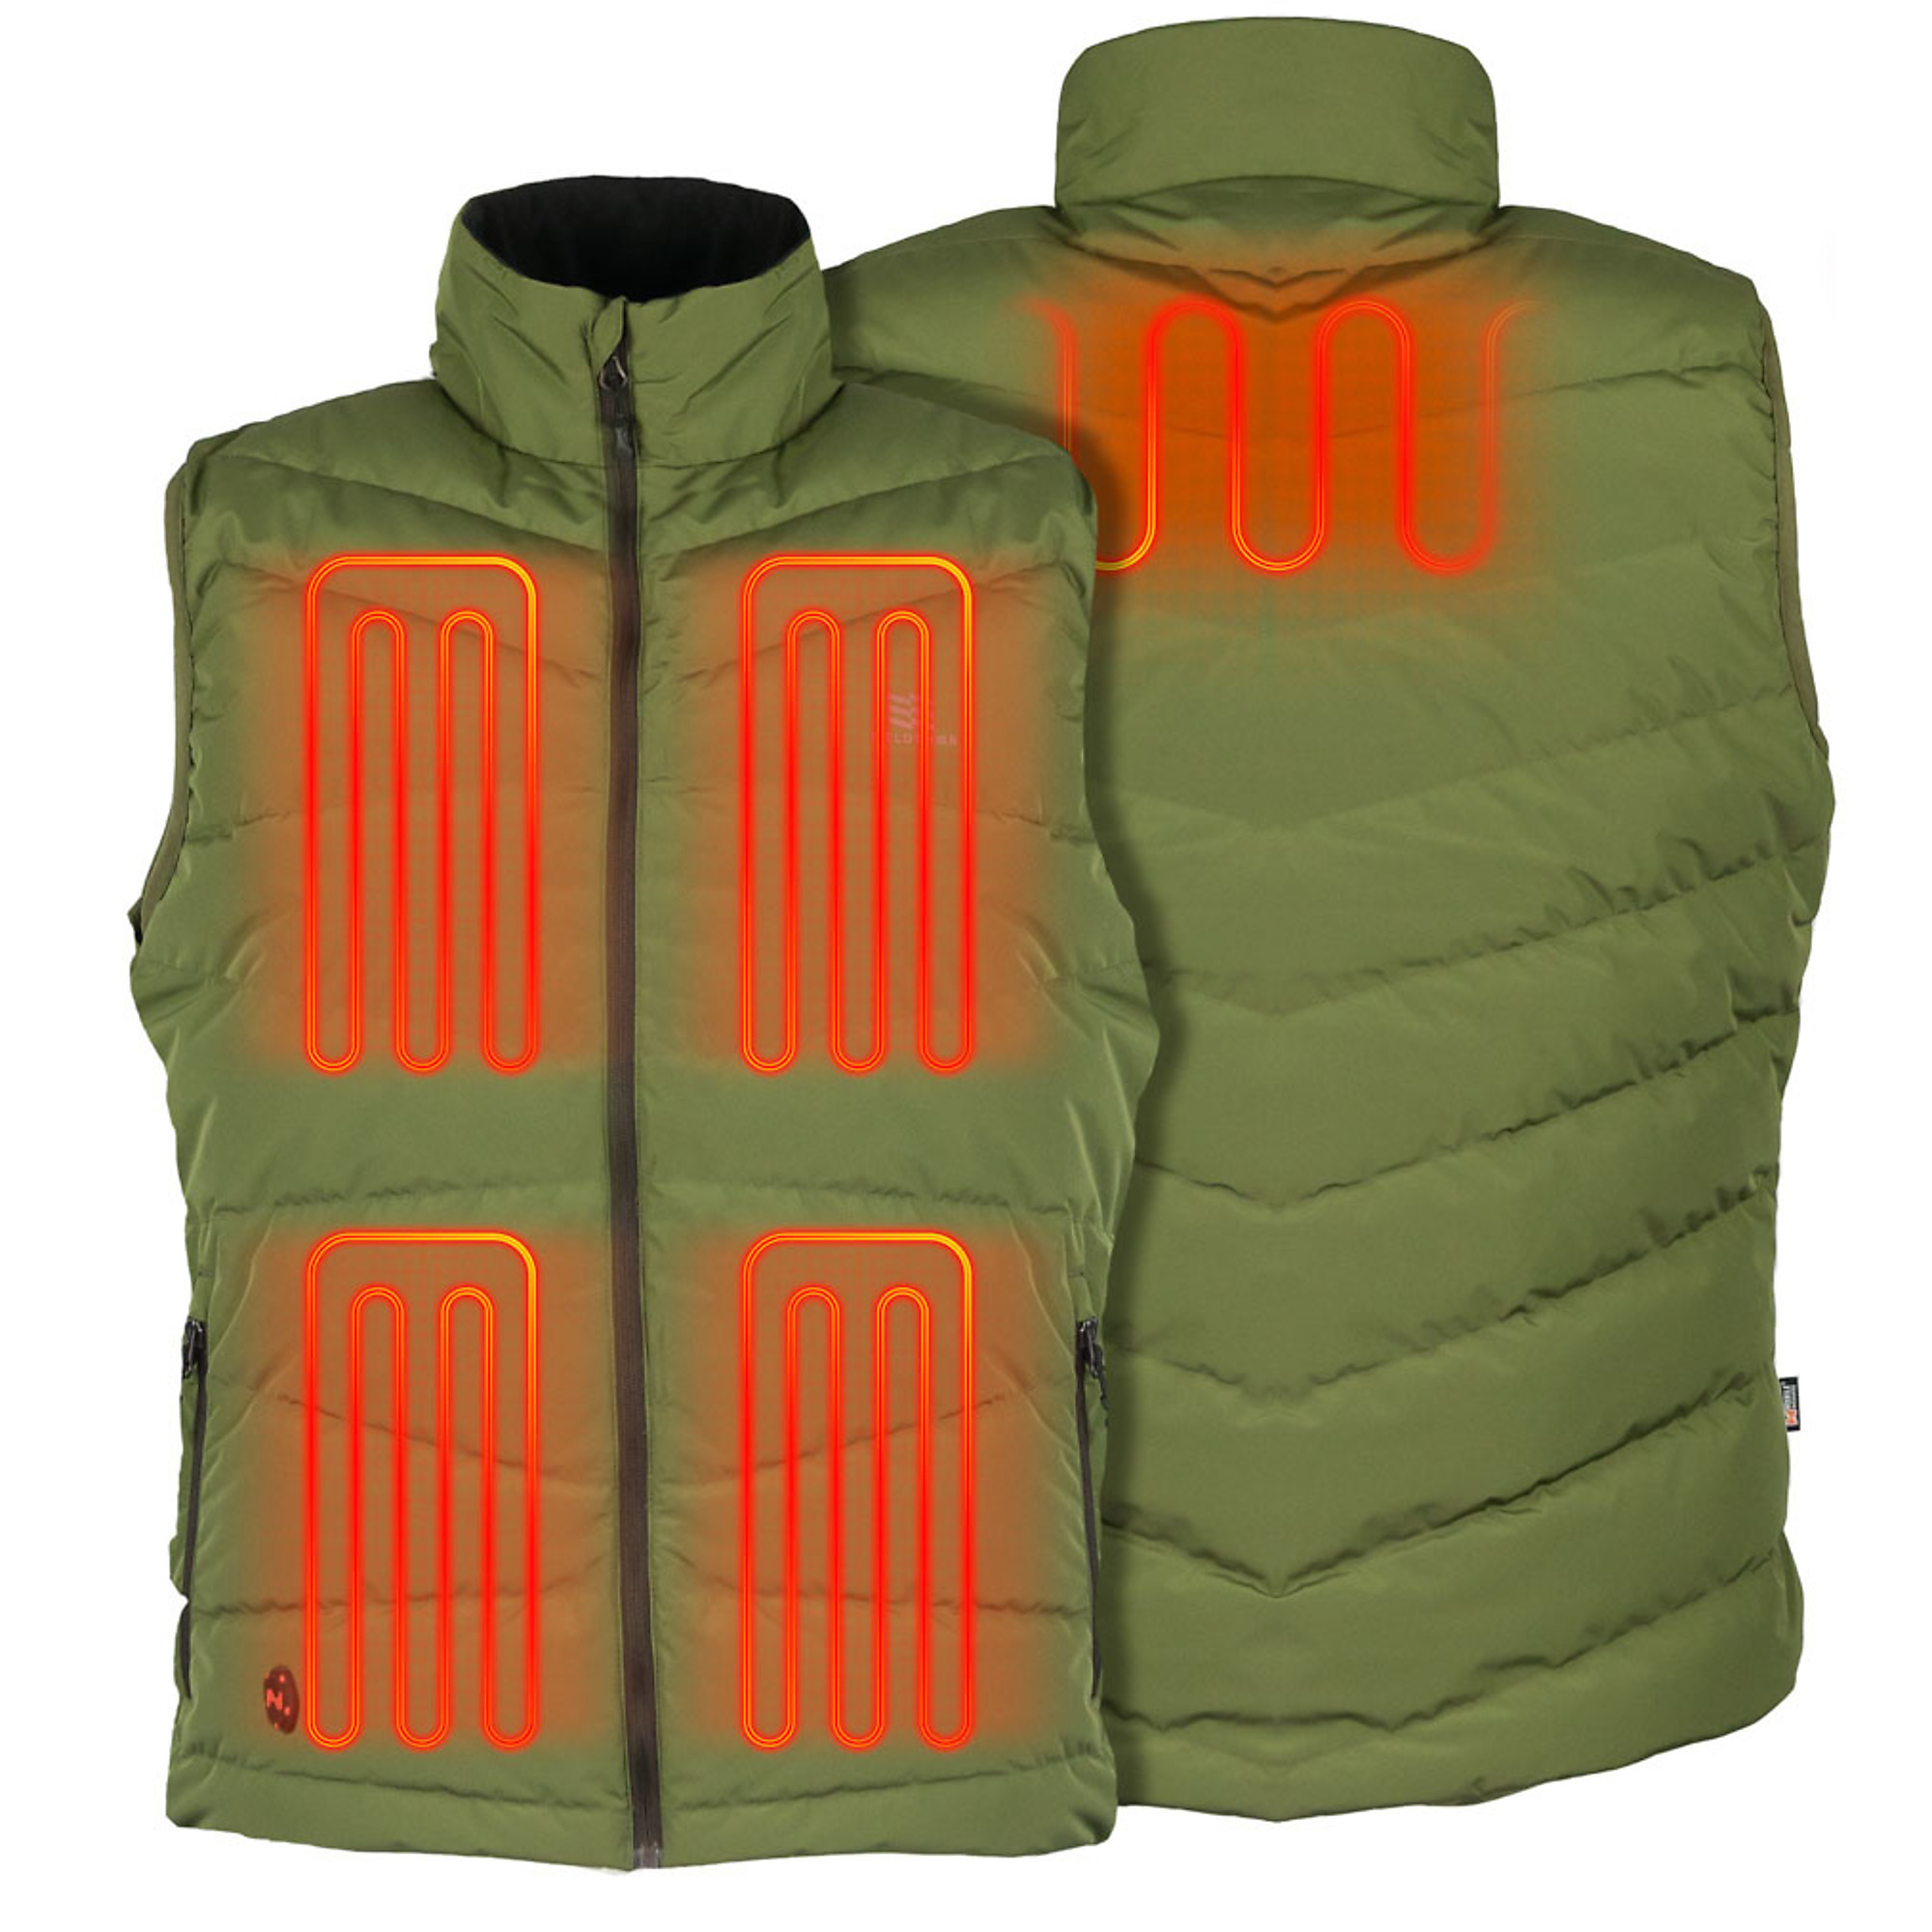 Fieldsheer, Men's Crest Heated Vest with 7.4v Battery, Size S, Color Olive Green, Model MWMV16010222